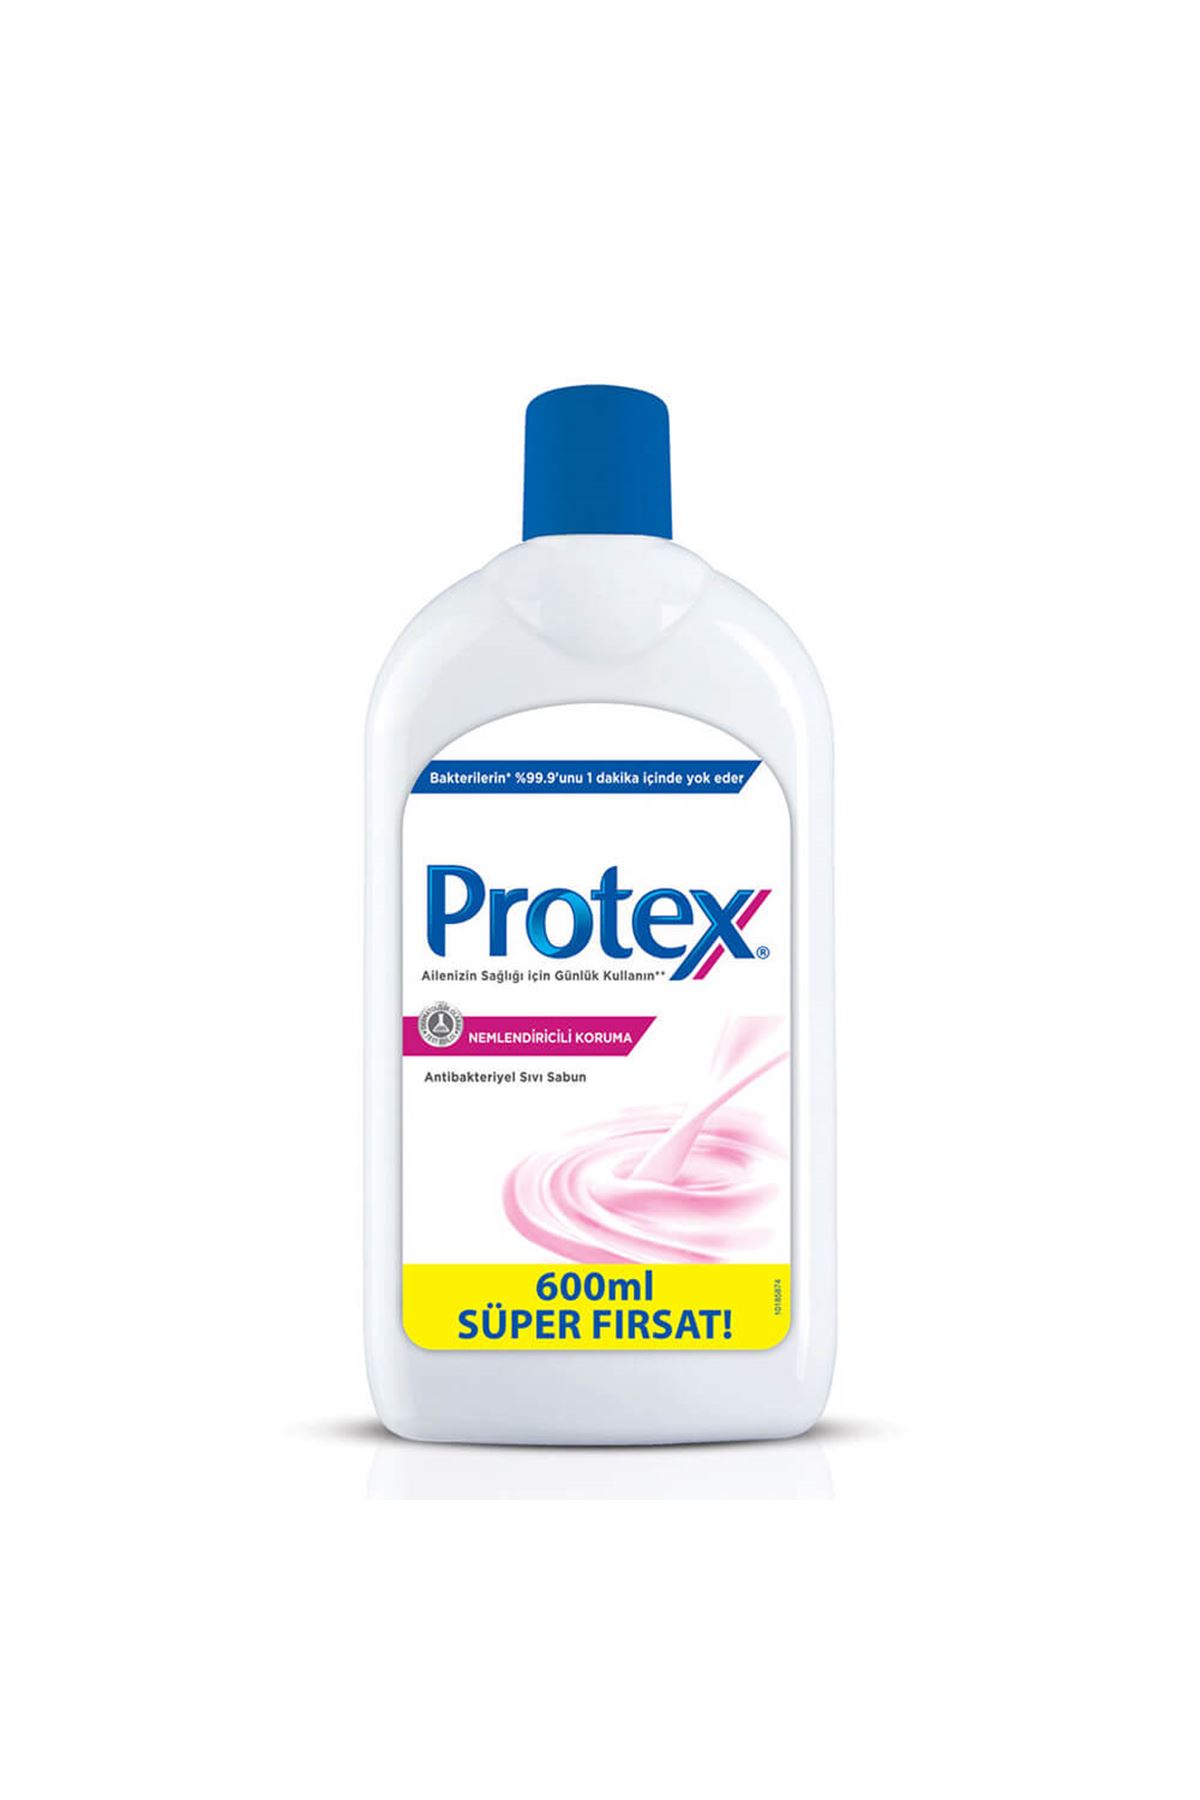 Protex Antibakteriyel Sıvı Sabun 600ml - Nemlendiricili Koruma